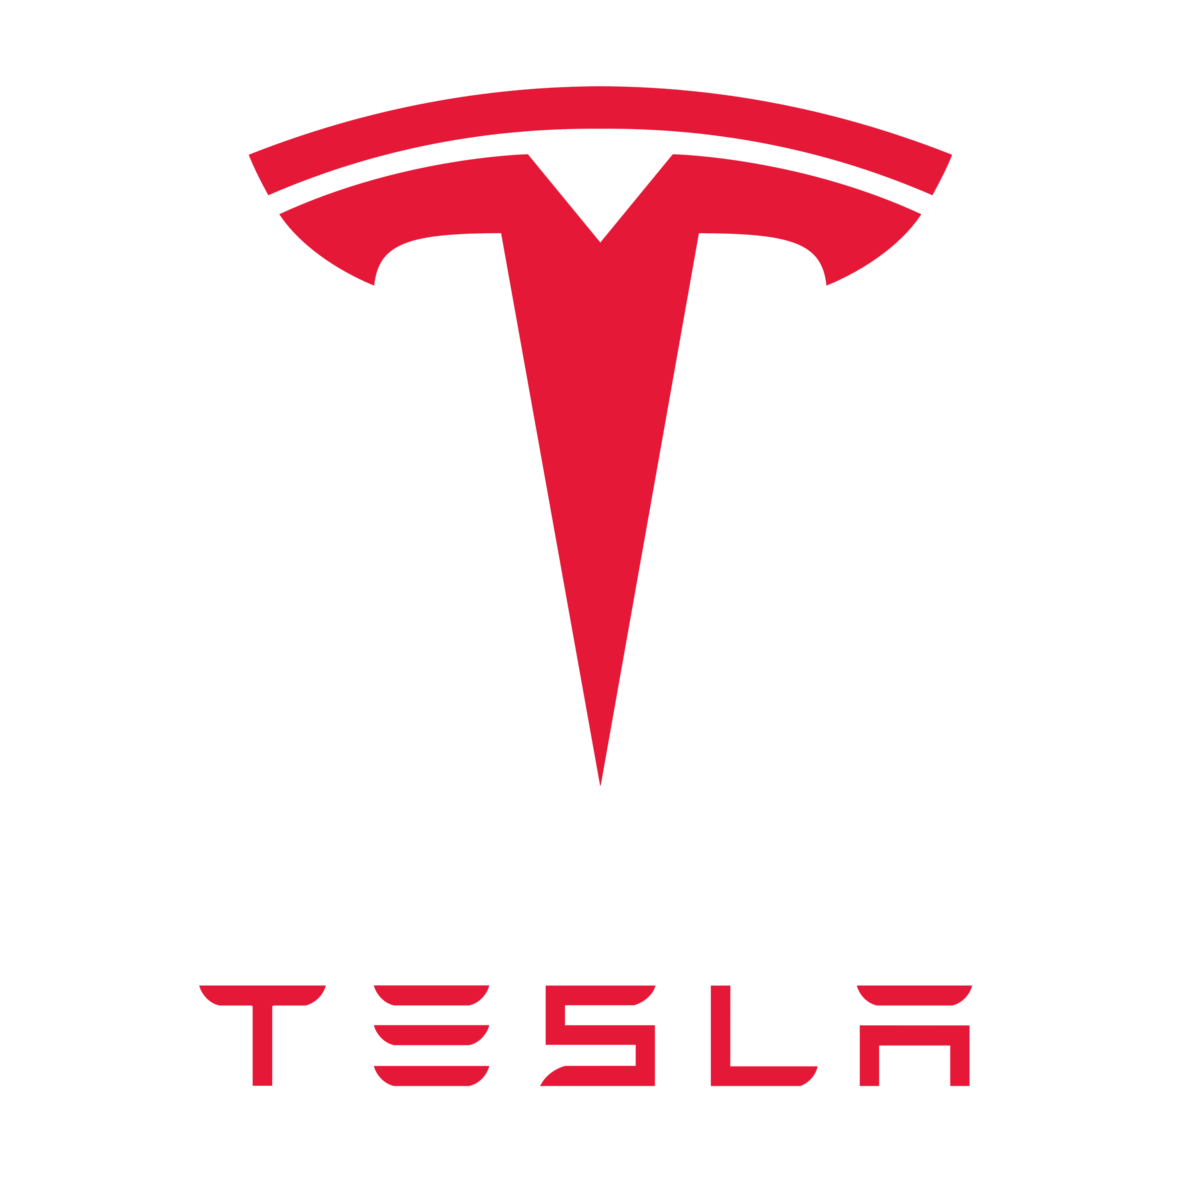 1200px-Tesla_logo.png